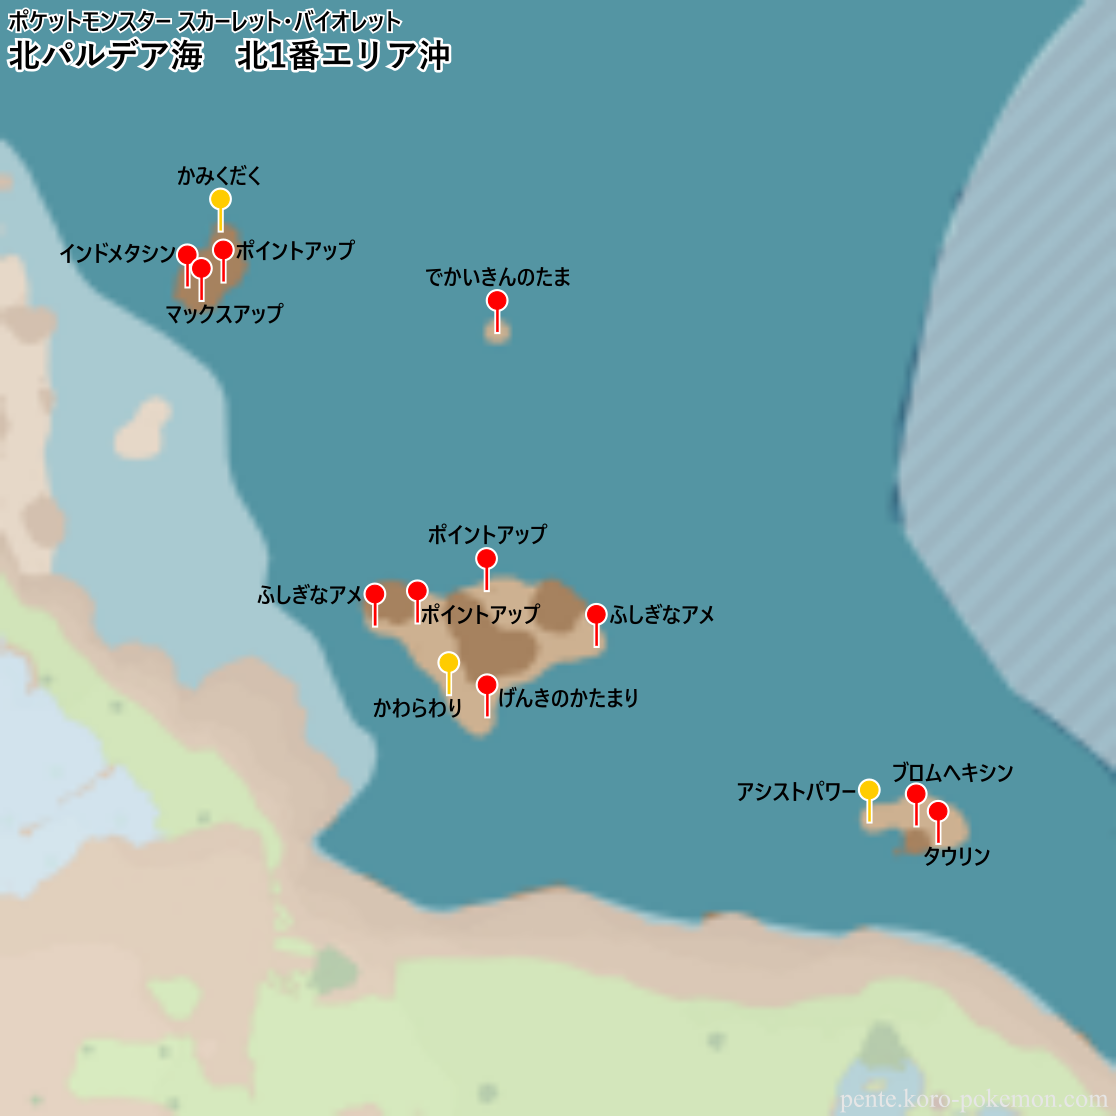 ポケモンスカーレット・バイオレット 北パルデア海 北1番エリア沖 マップ (落ちているアイテム)